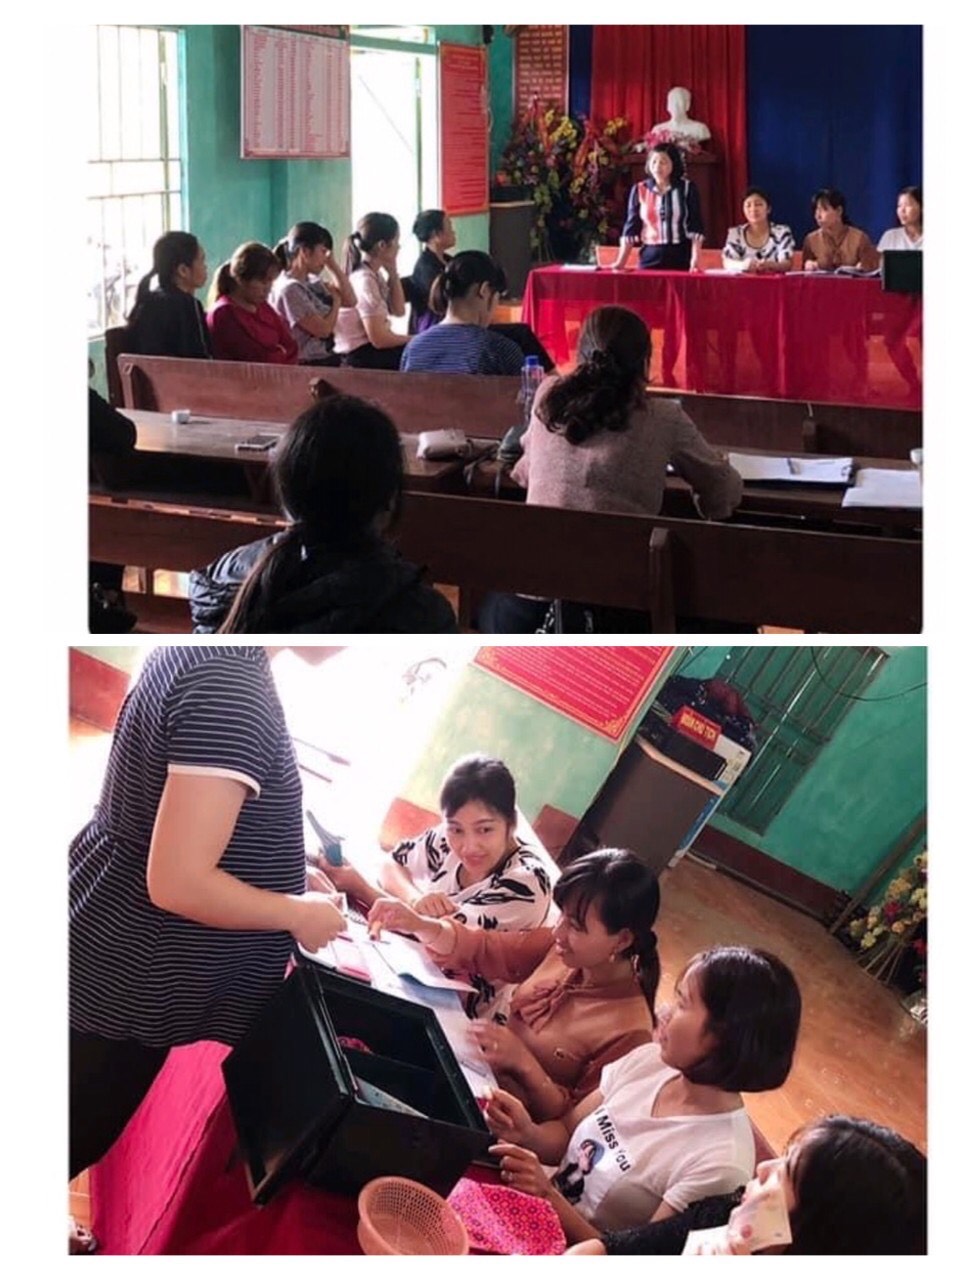 Chi hội phụ nữ thôn Tân Thành - thị trấn Vĩnh Tuy tổ chức sinh hoạt nhóm Cha mẹ chăm sóc phát triển trẻ thơ từ 0 đến 8 tuổi và nhóm Tiết kiệm và vay vốn thôn